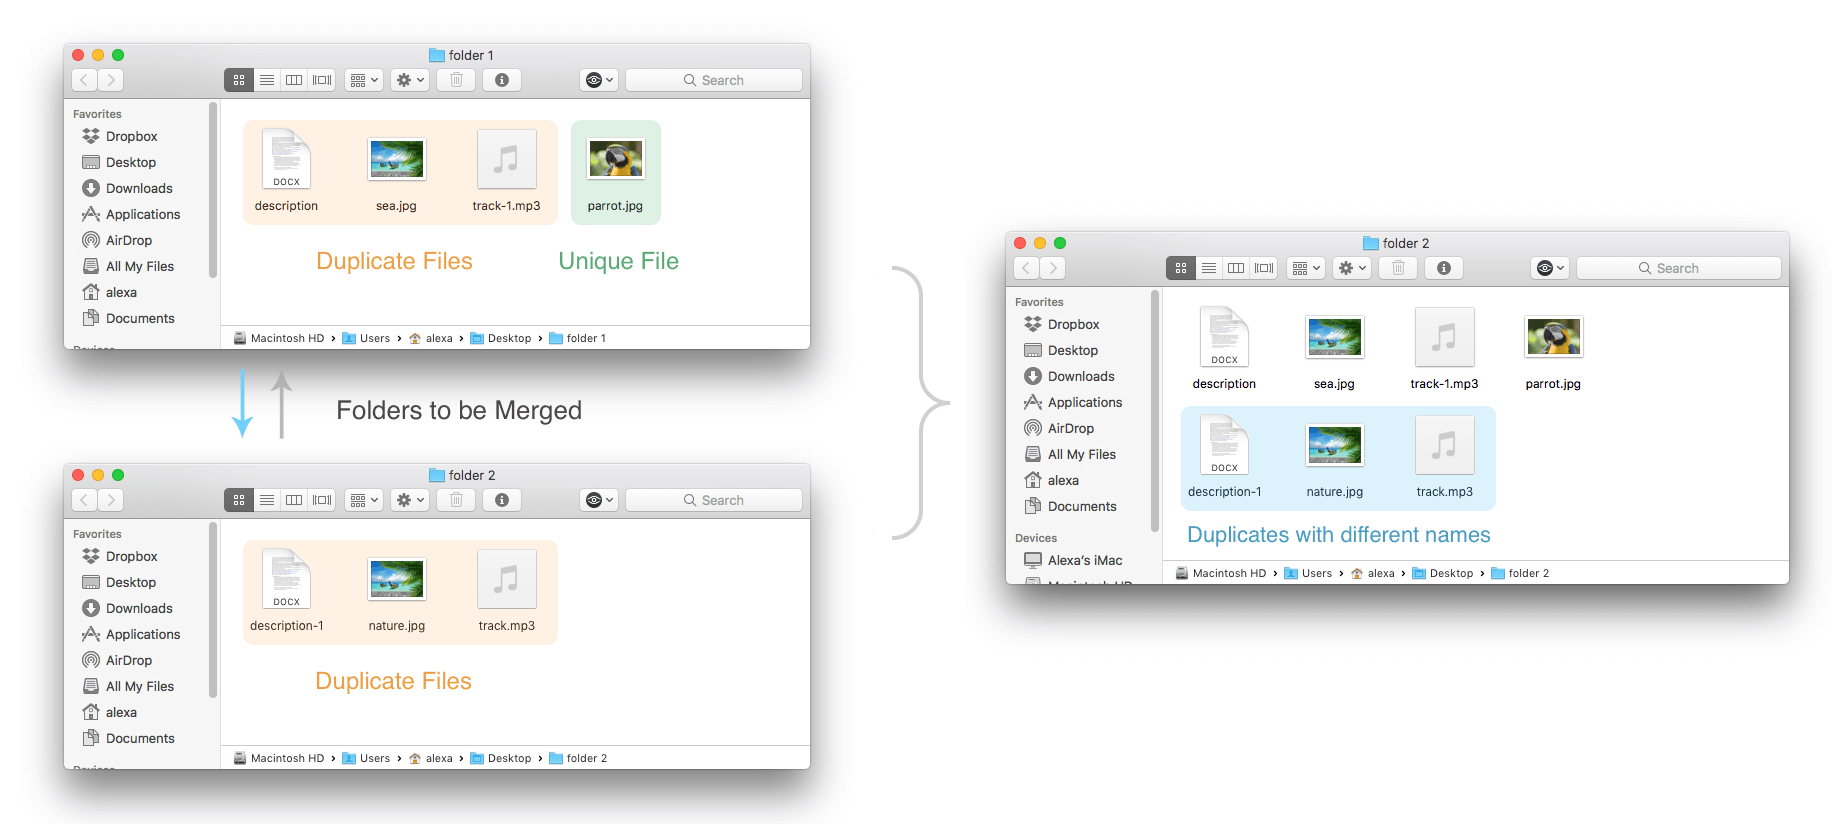 Finder windows showing removed source folder after merging